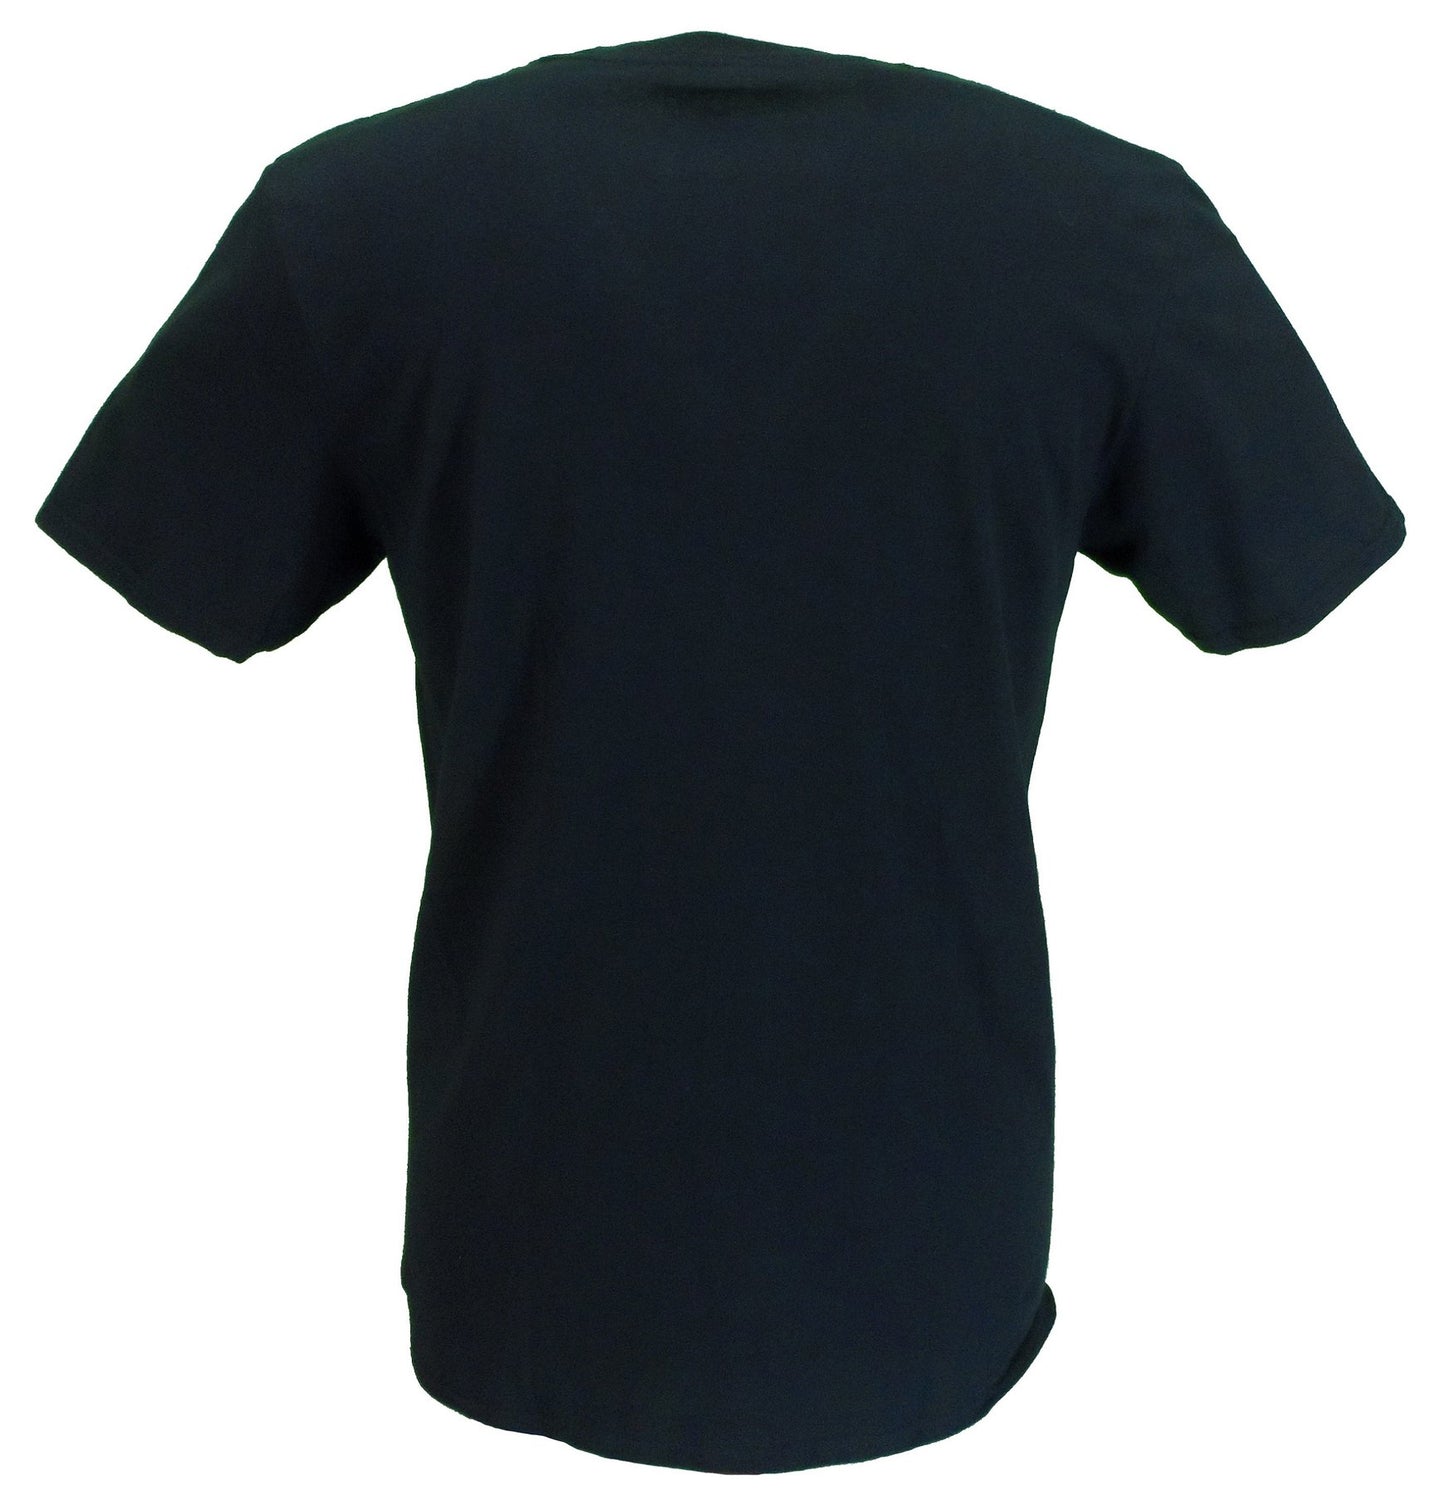 T-shirt ufficiale nera da uomo con logo Devo